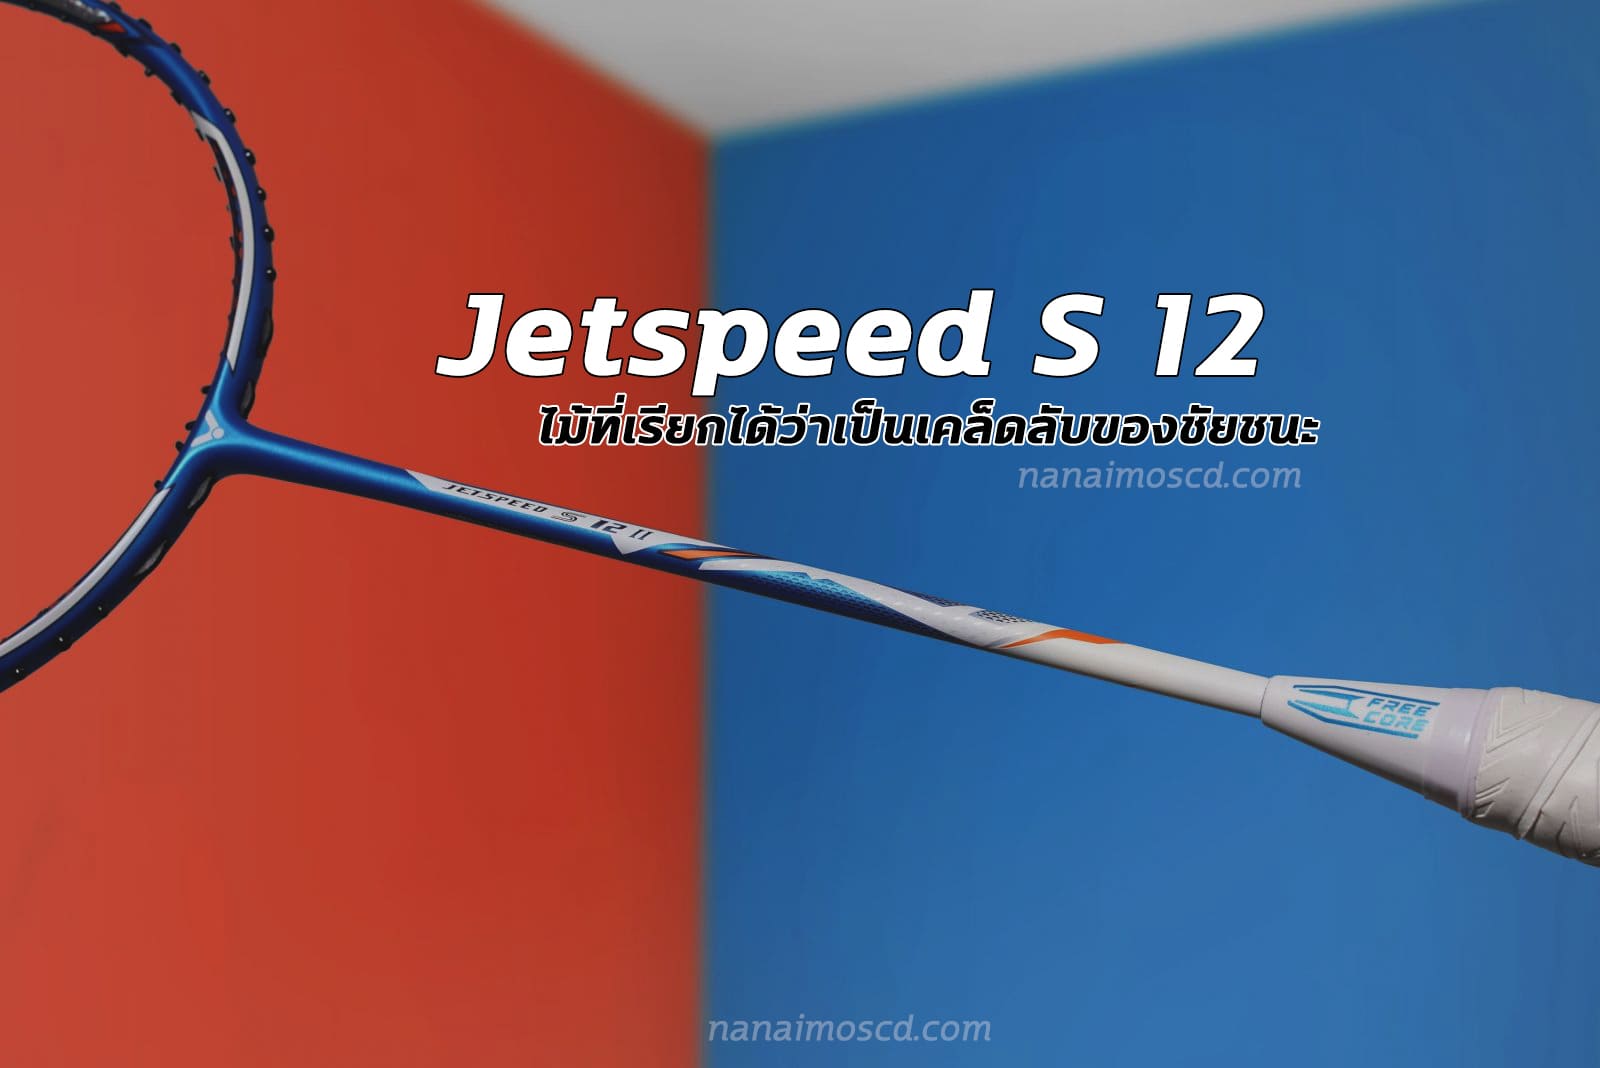 Jetspeed S 12